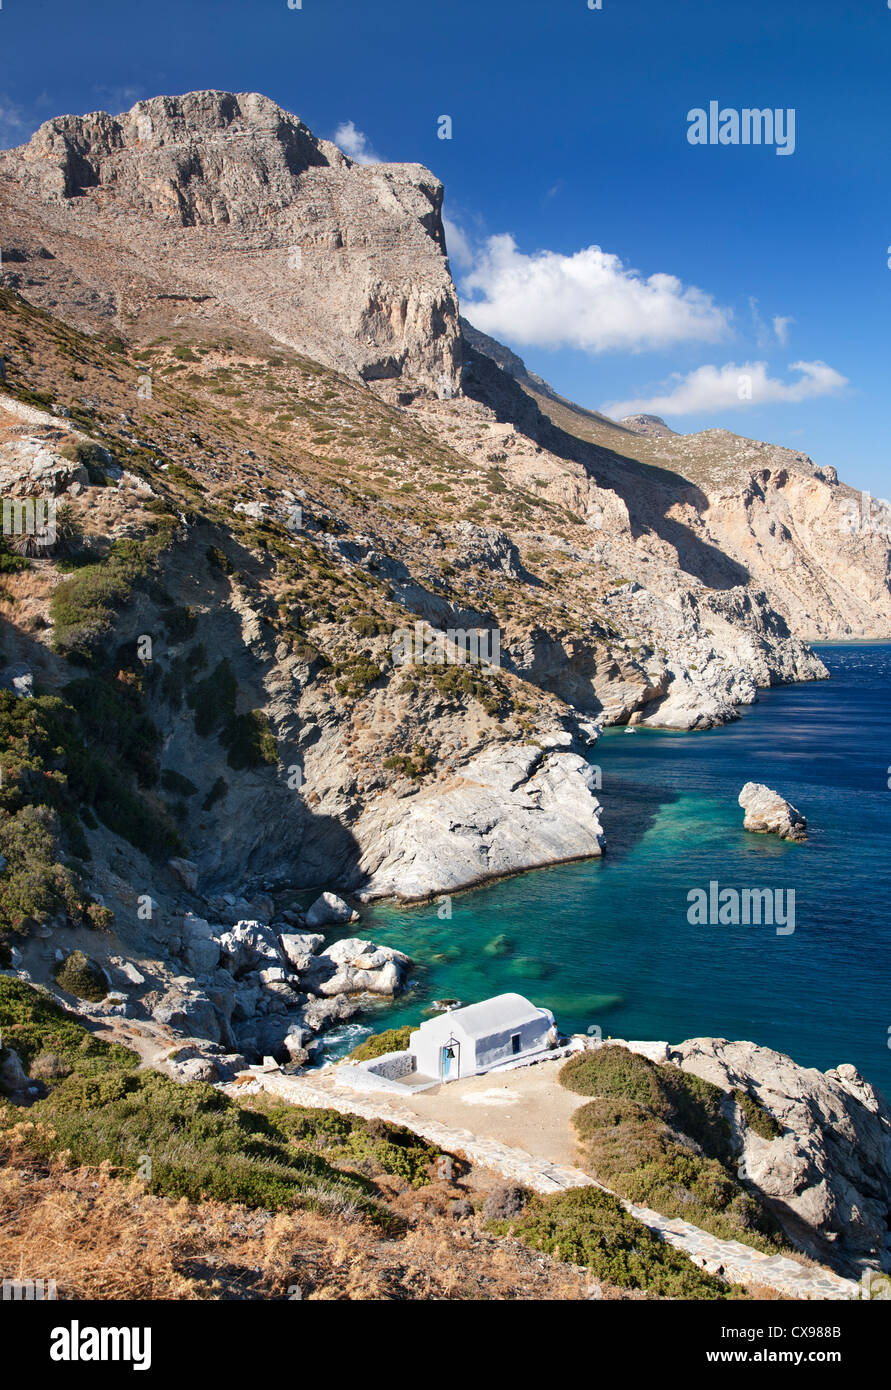 Agia Anna bay or Grand Bleu on Amorgos Island in Greece Stock Photo